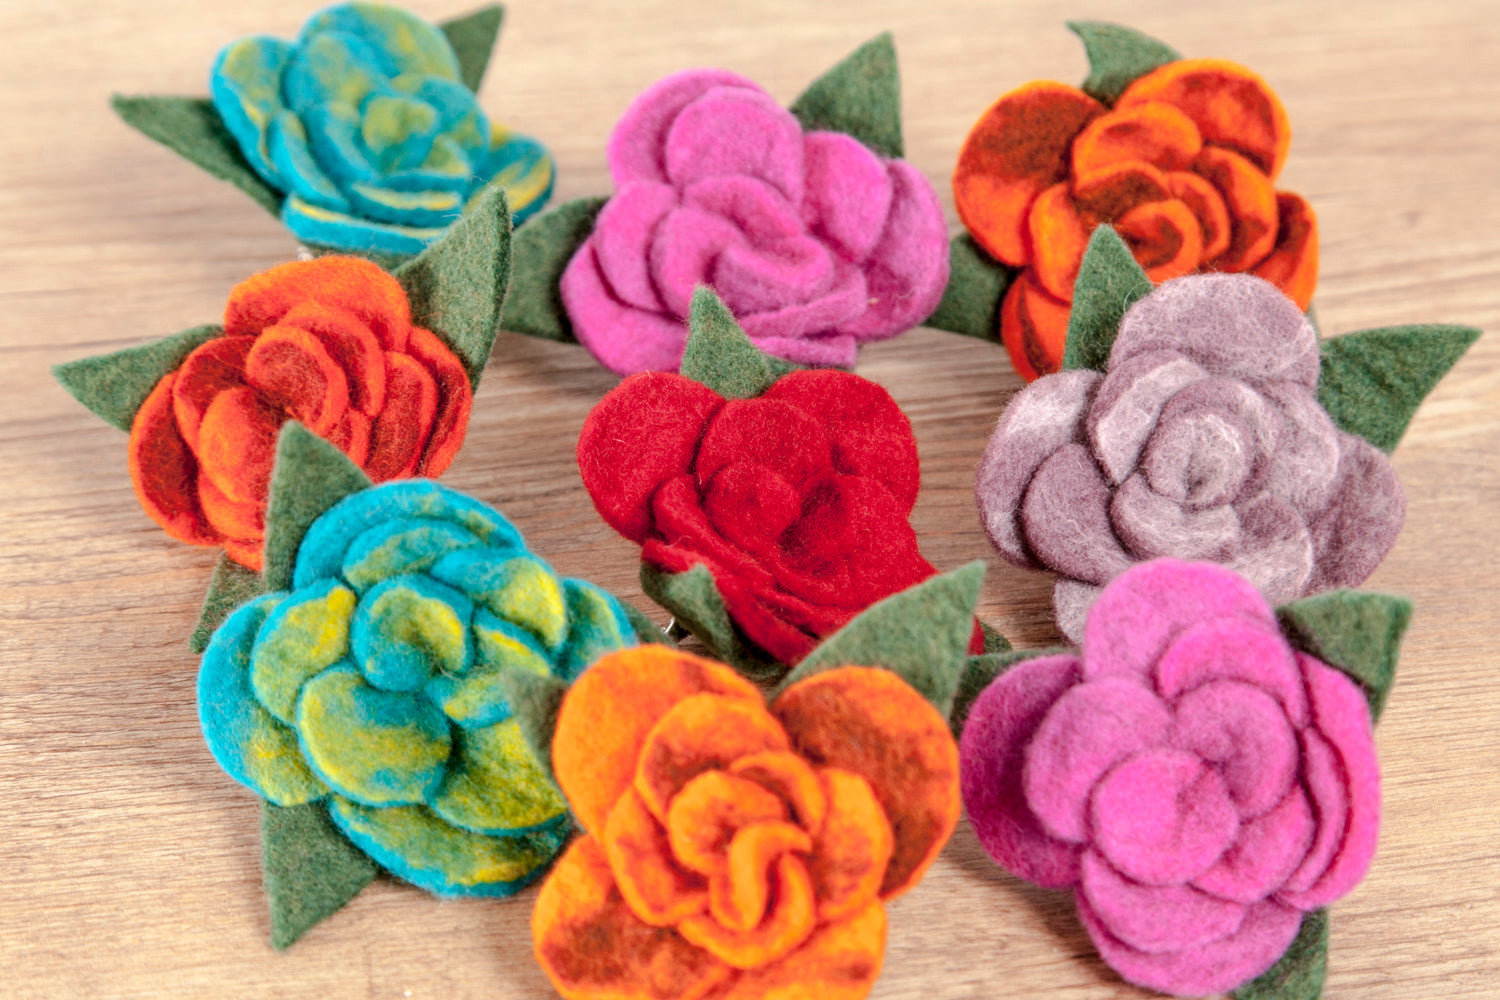 Brosche aus Wolle (Merino), Rose, türkis, rot, pink, lila - fair gehandelt